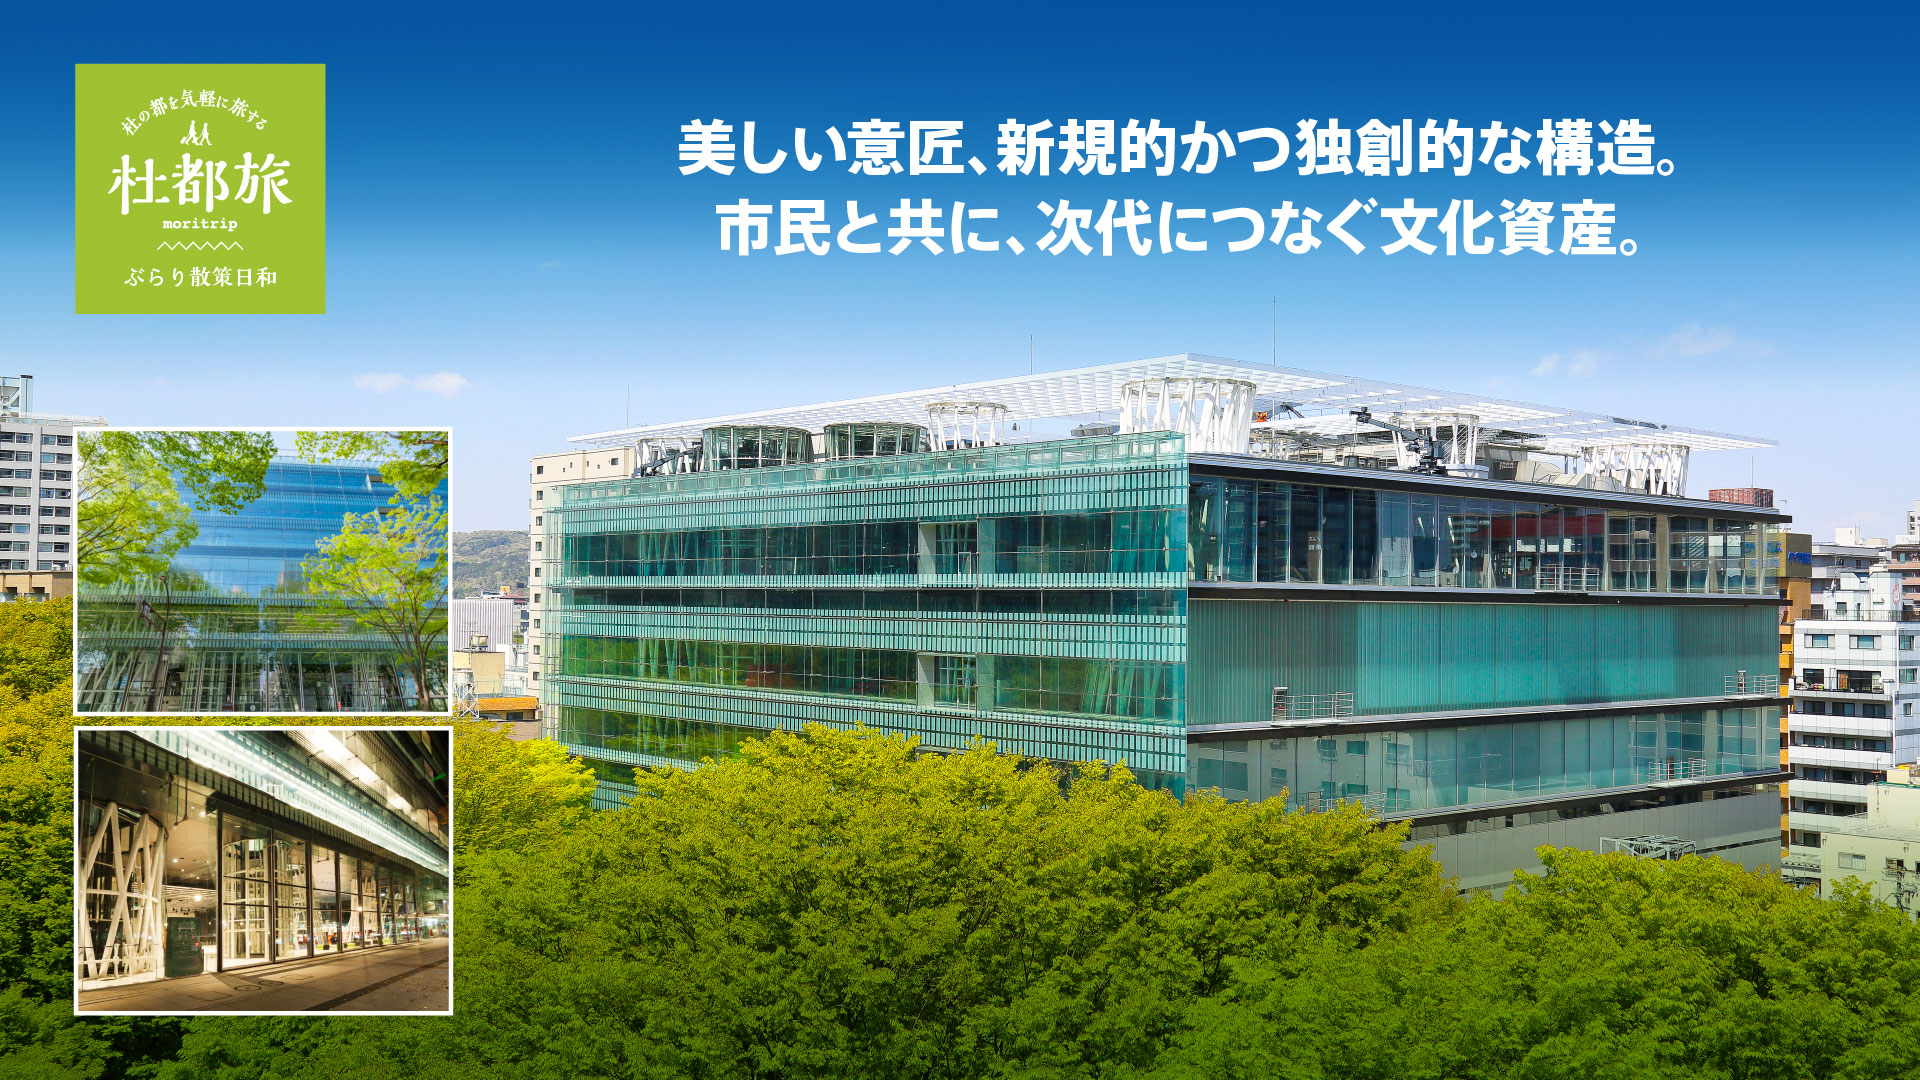 せんだいメディアテーク 01月 年 杜都旅 仙台国際センター Sendai International Center